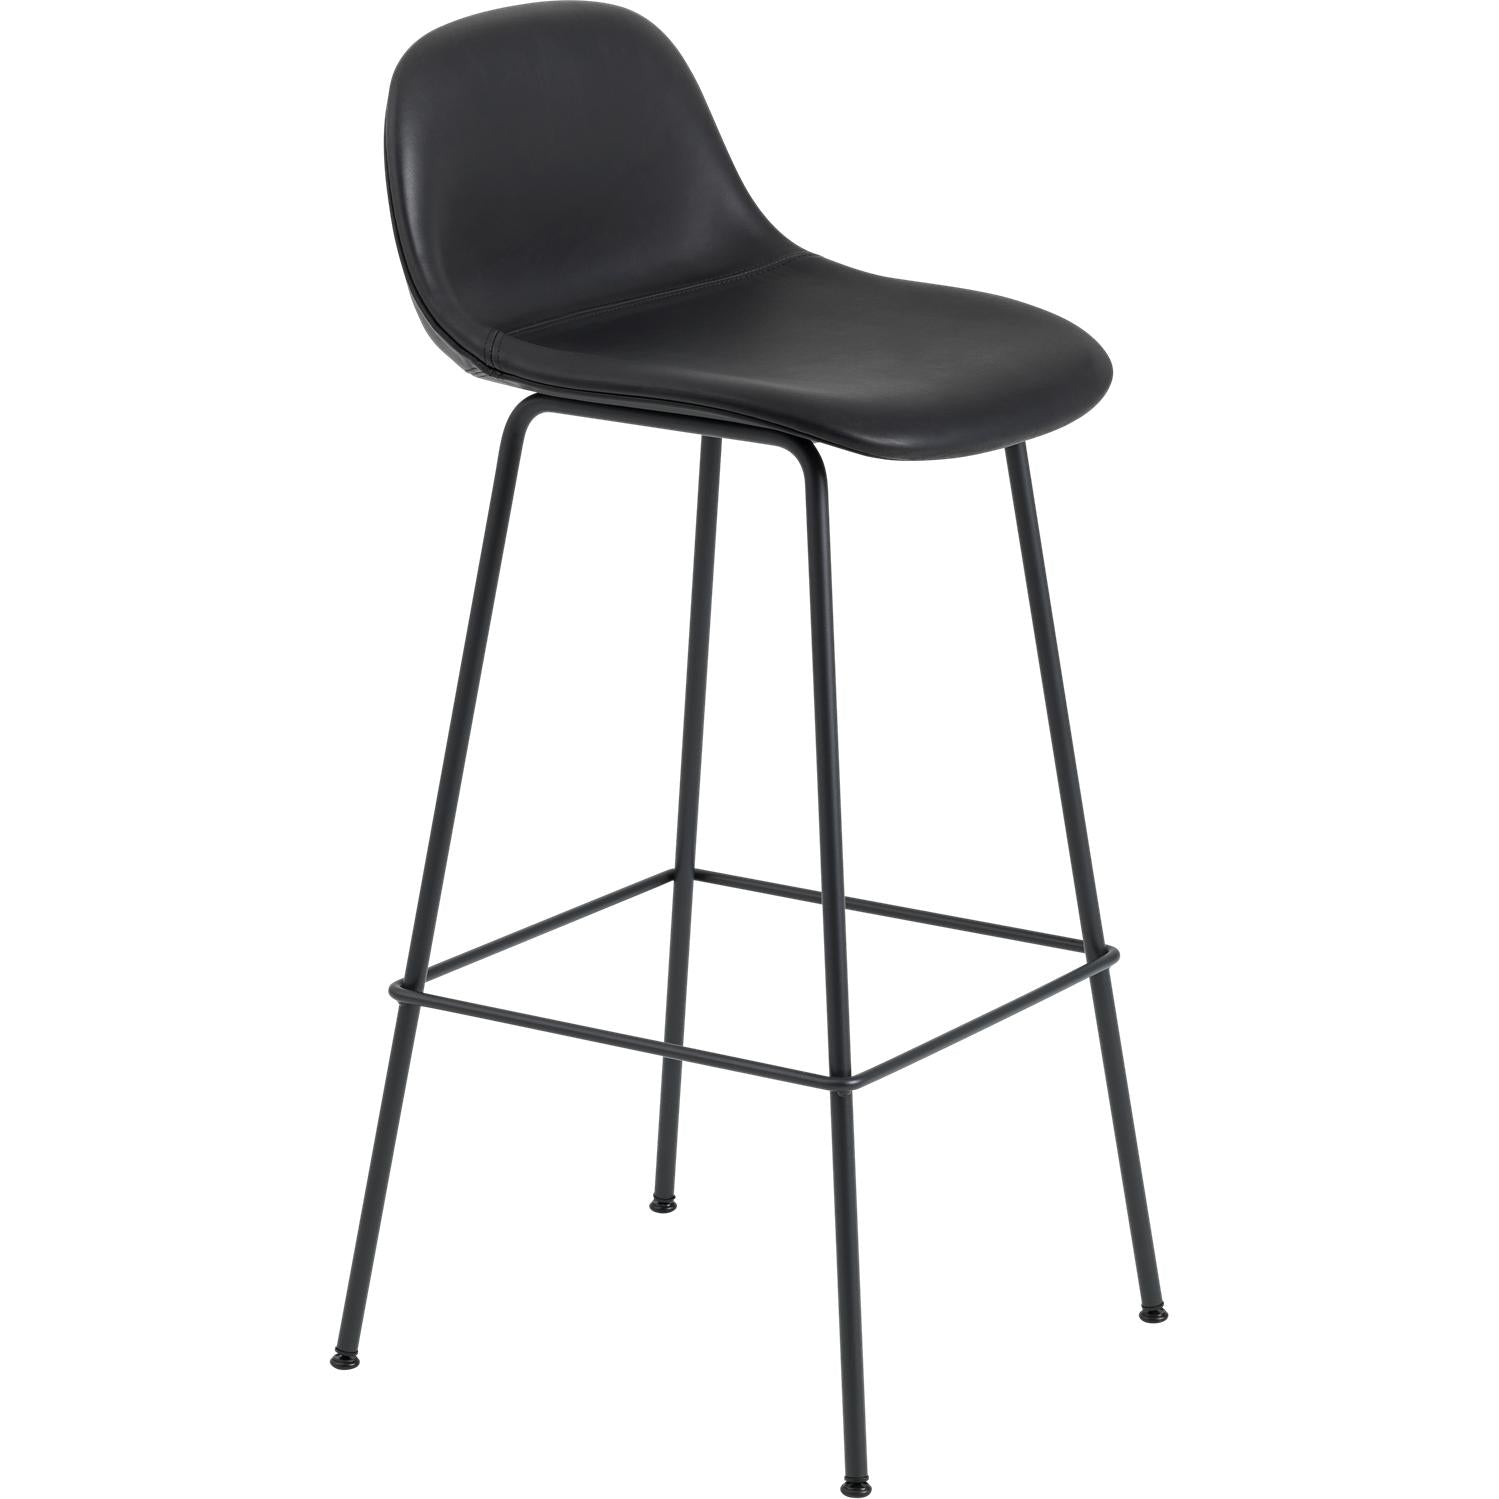 Muuto Fiber Bar Stuhl mit Basis der Rückenlehne, Faser-/Ledersitz, schwarzes Verfeinerder Leder